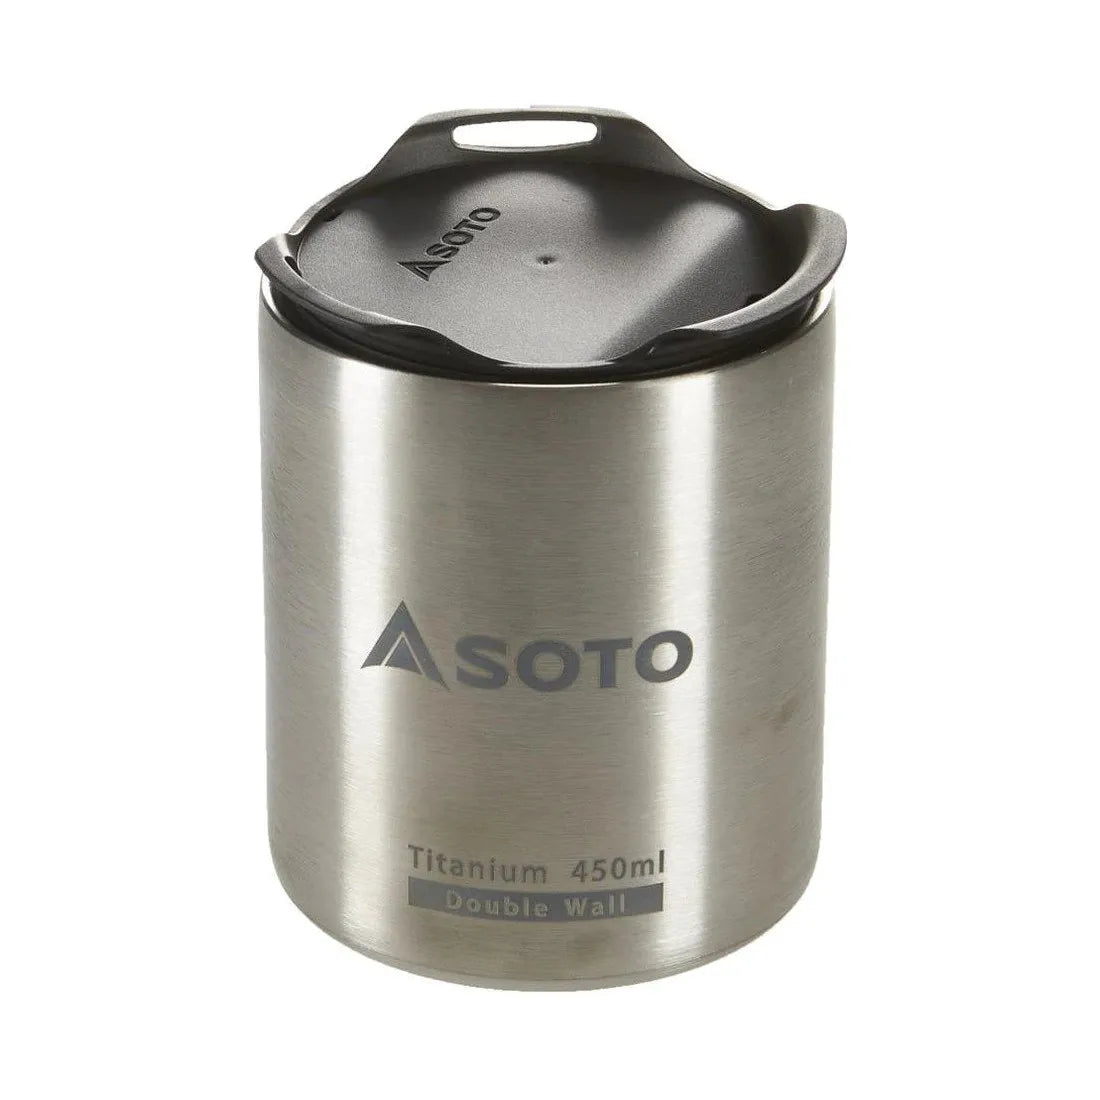 Soto AeroMug Titanum, Double-Wall Mug With Lid 450ml